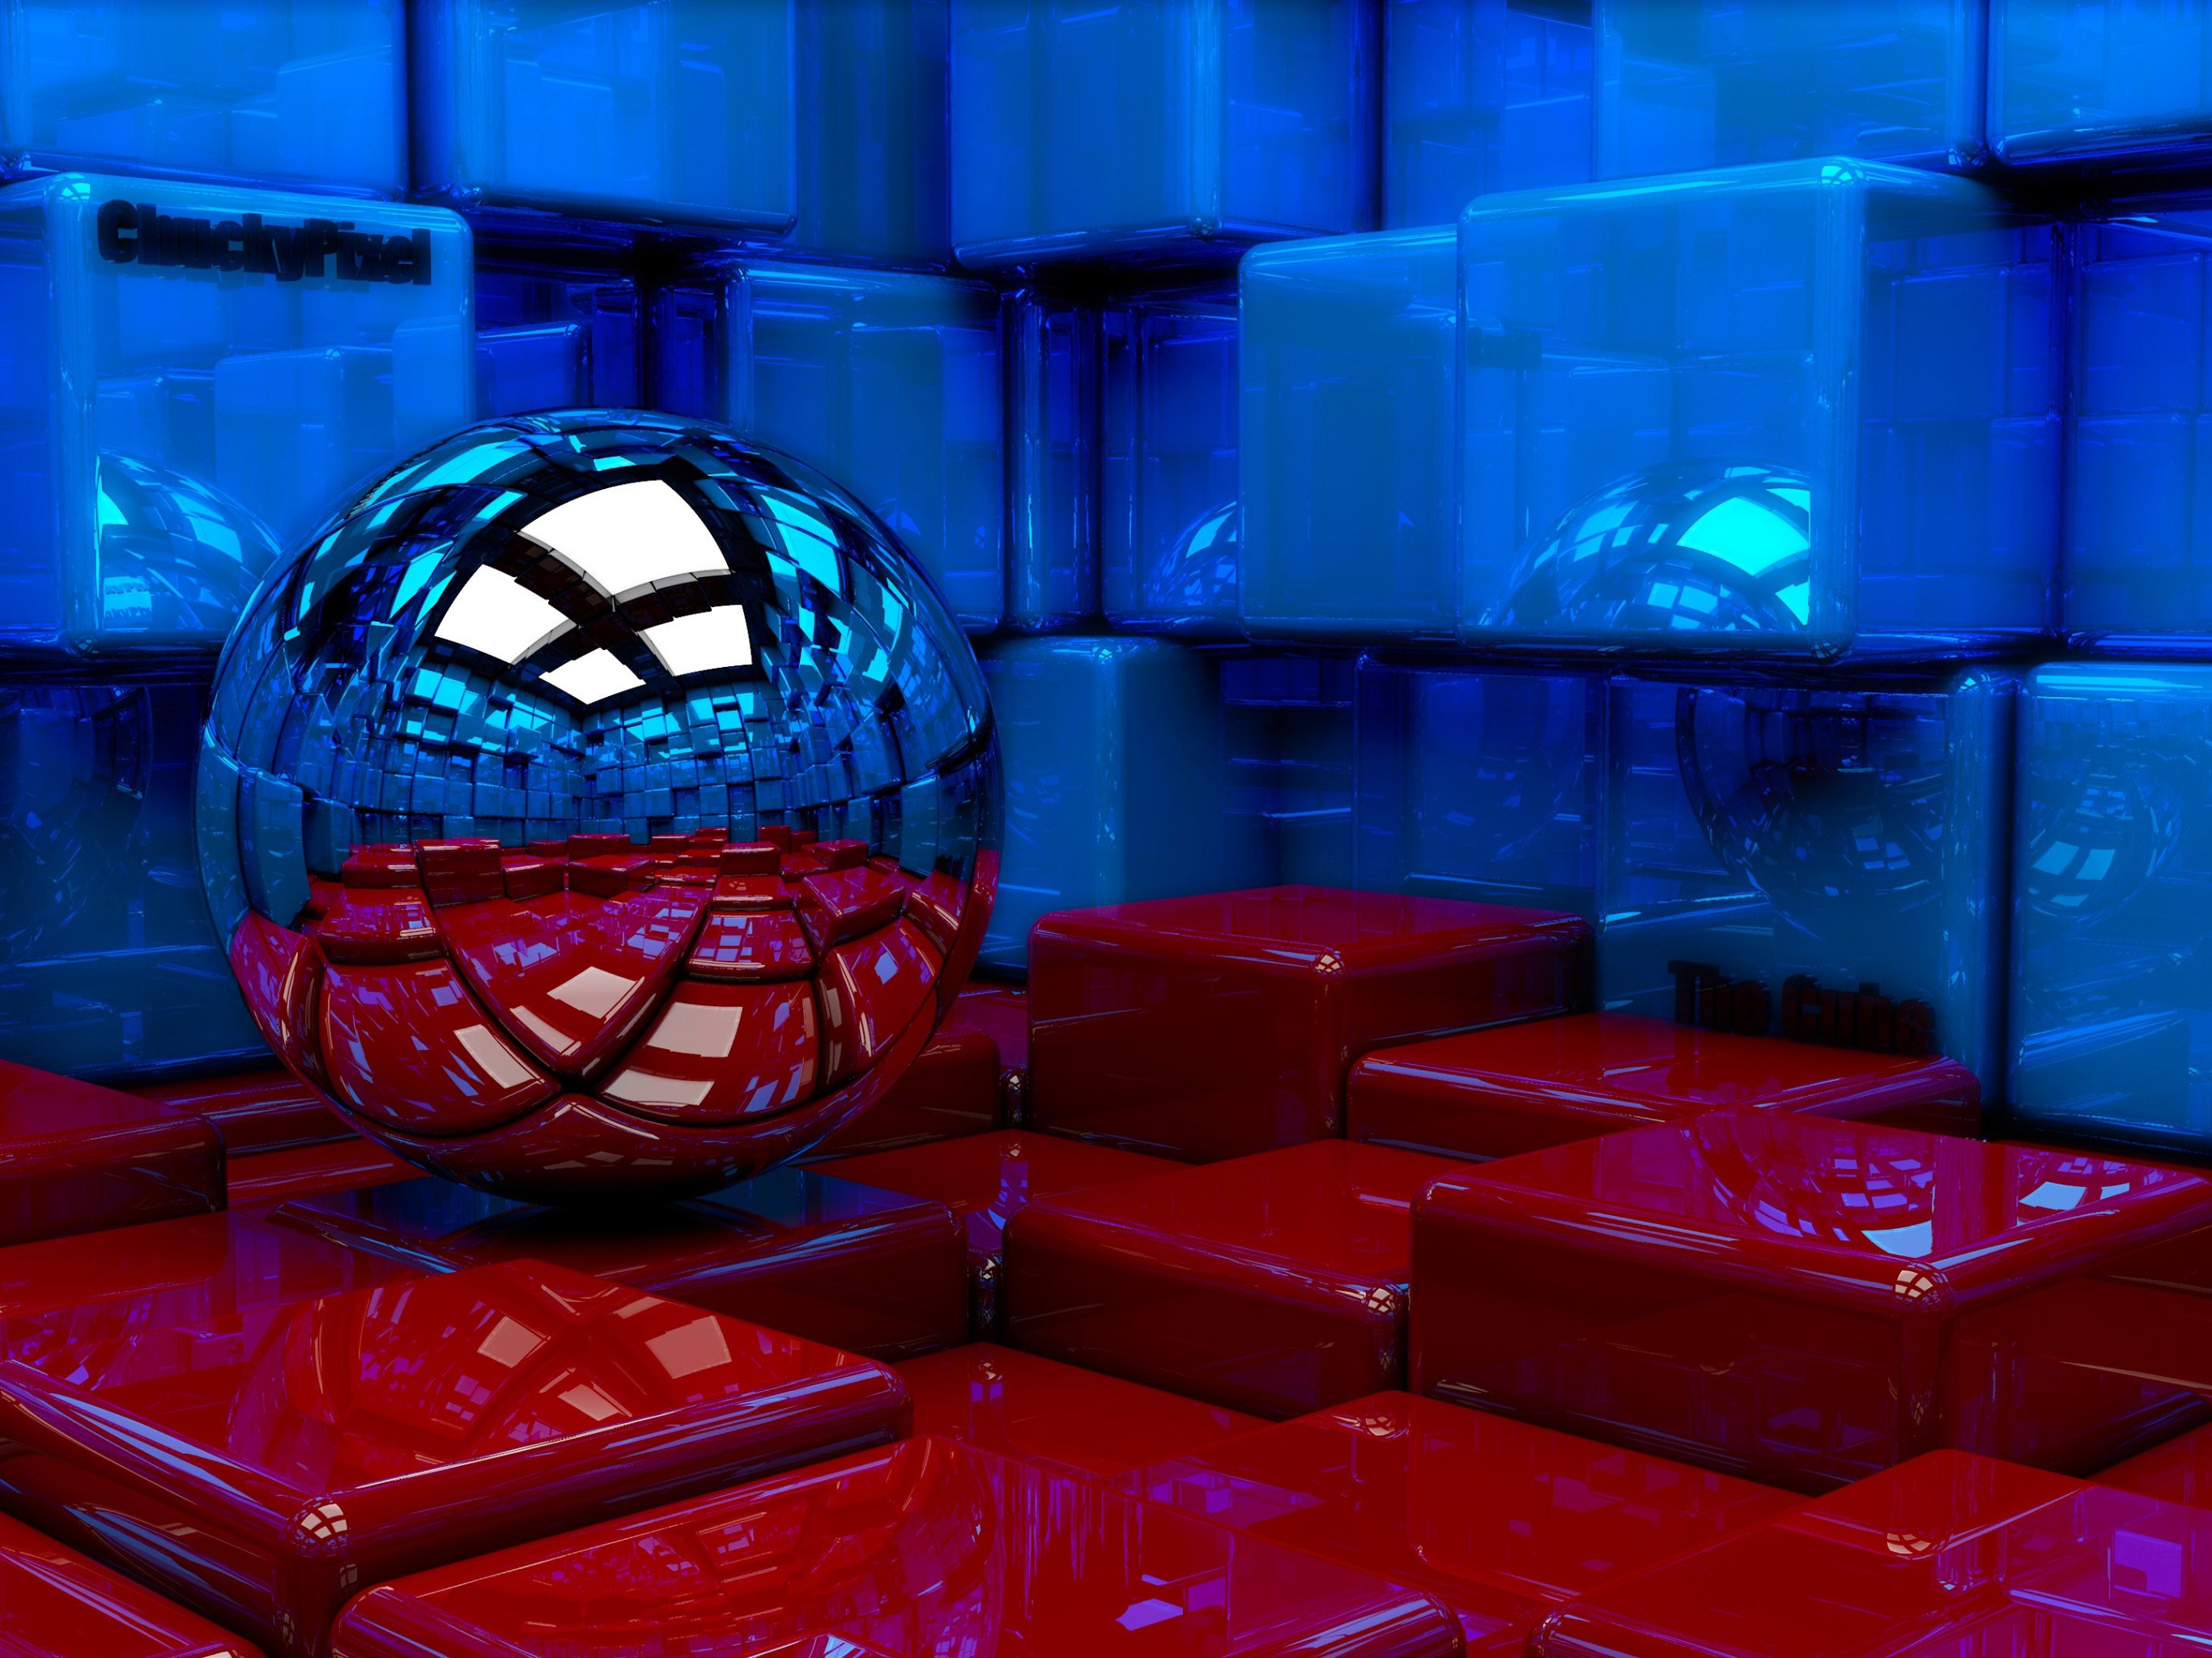 2732x2048 fondo de pantalla,azul,rojo,ligero,esfera,personaje de ficción